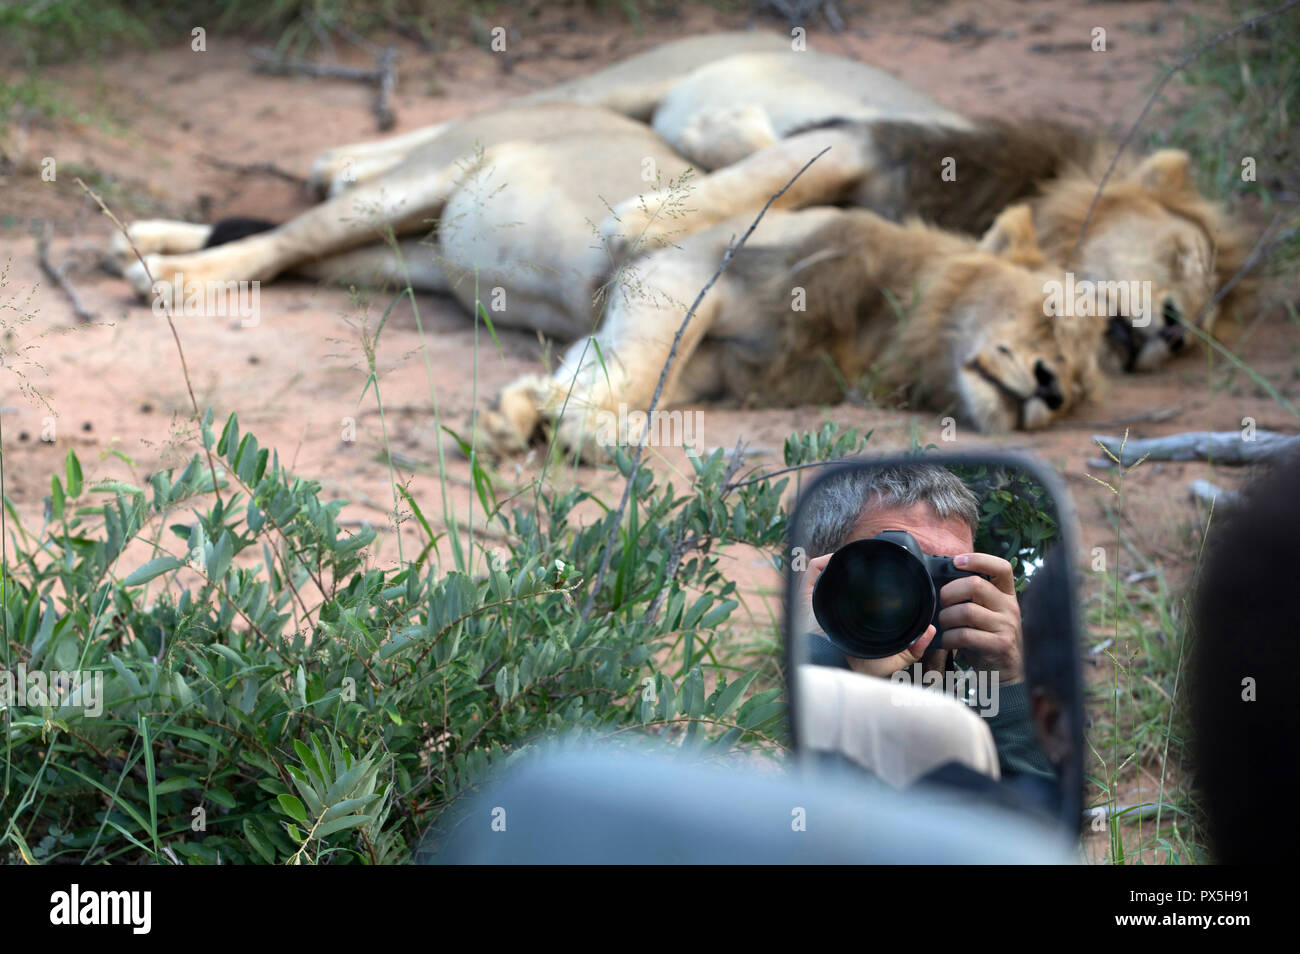 Kruger National Park.   Safari. Lion (Panthera leo). South Africa. Stock Photo